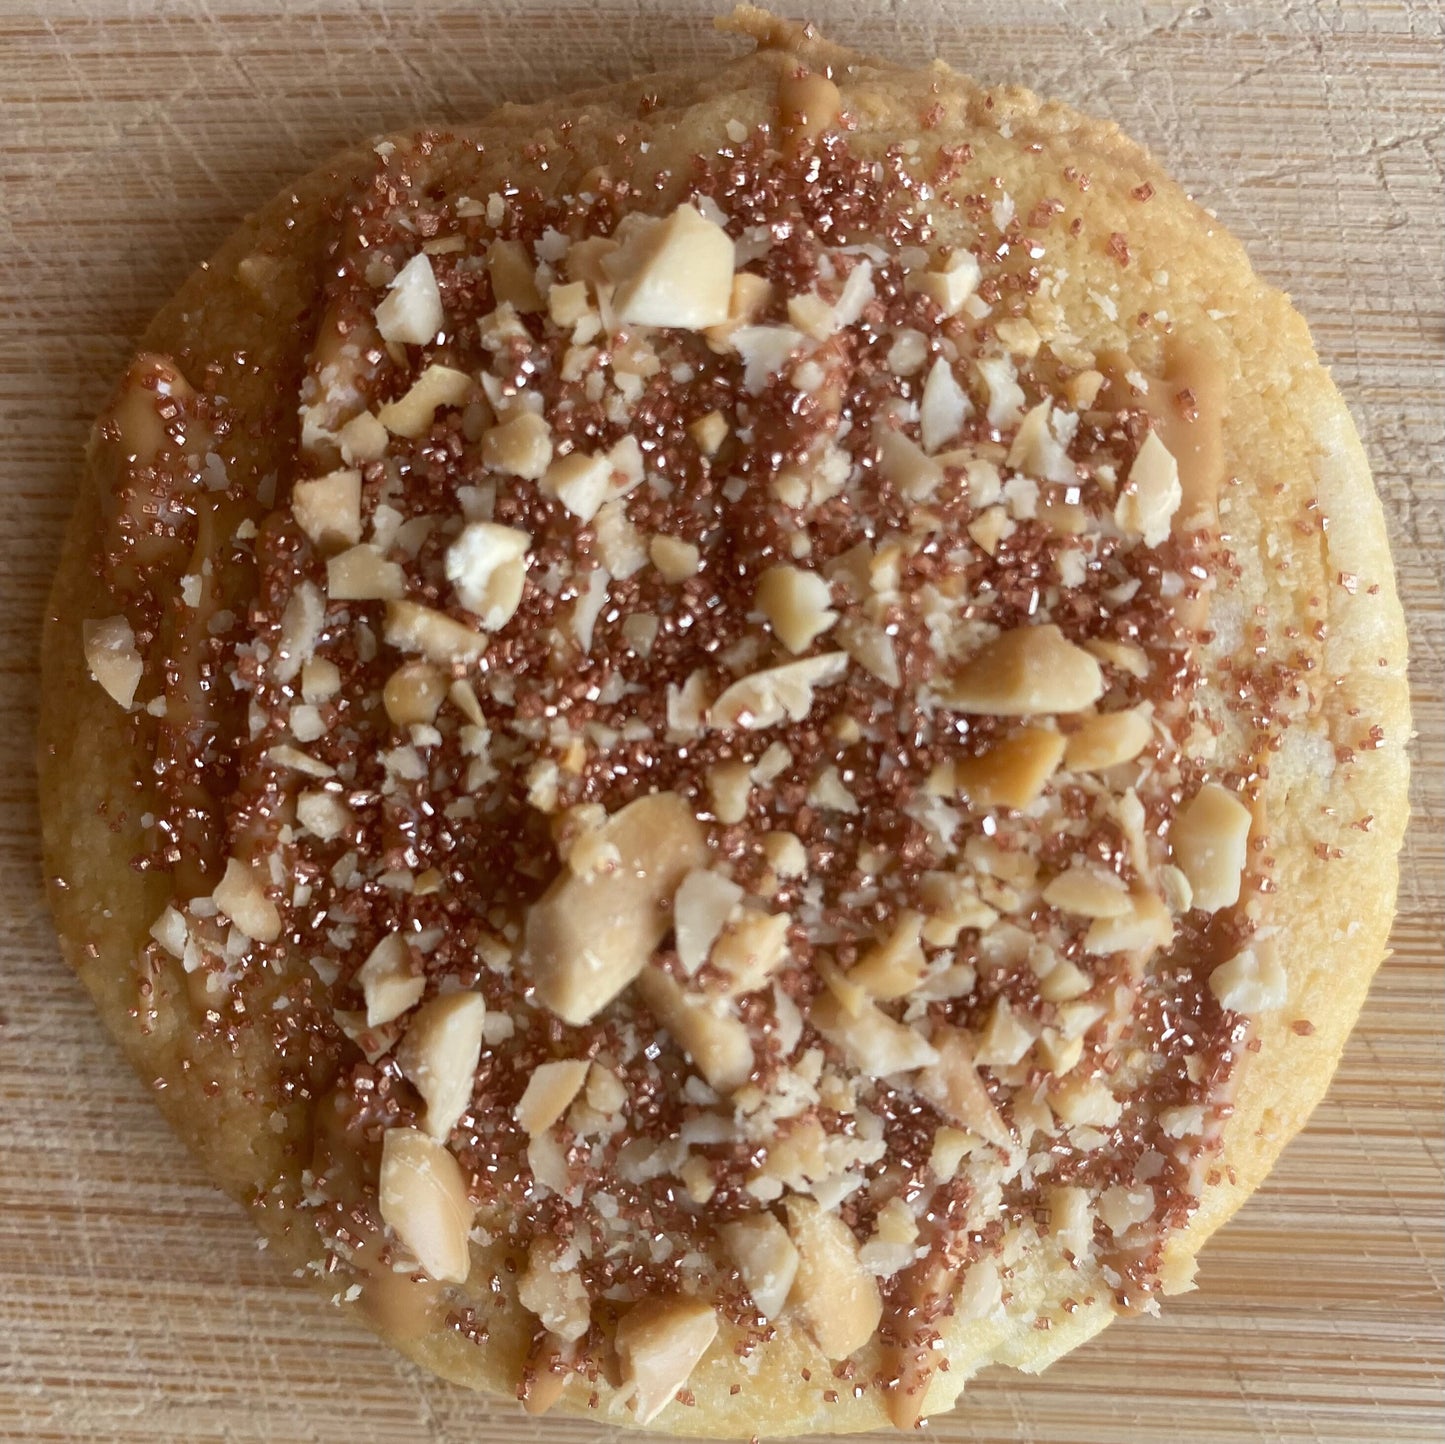 Cookie au beurre de cacahuète et des morceaux concassés de cacahuète, idéal après une séance de fitness ou une marche rapide